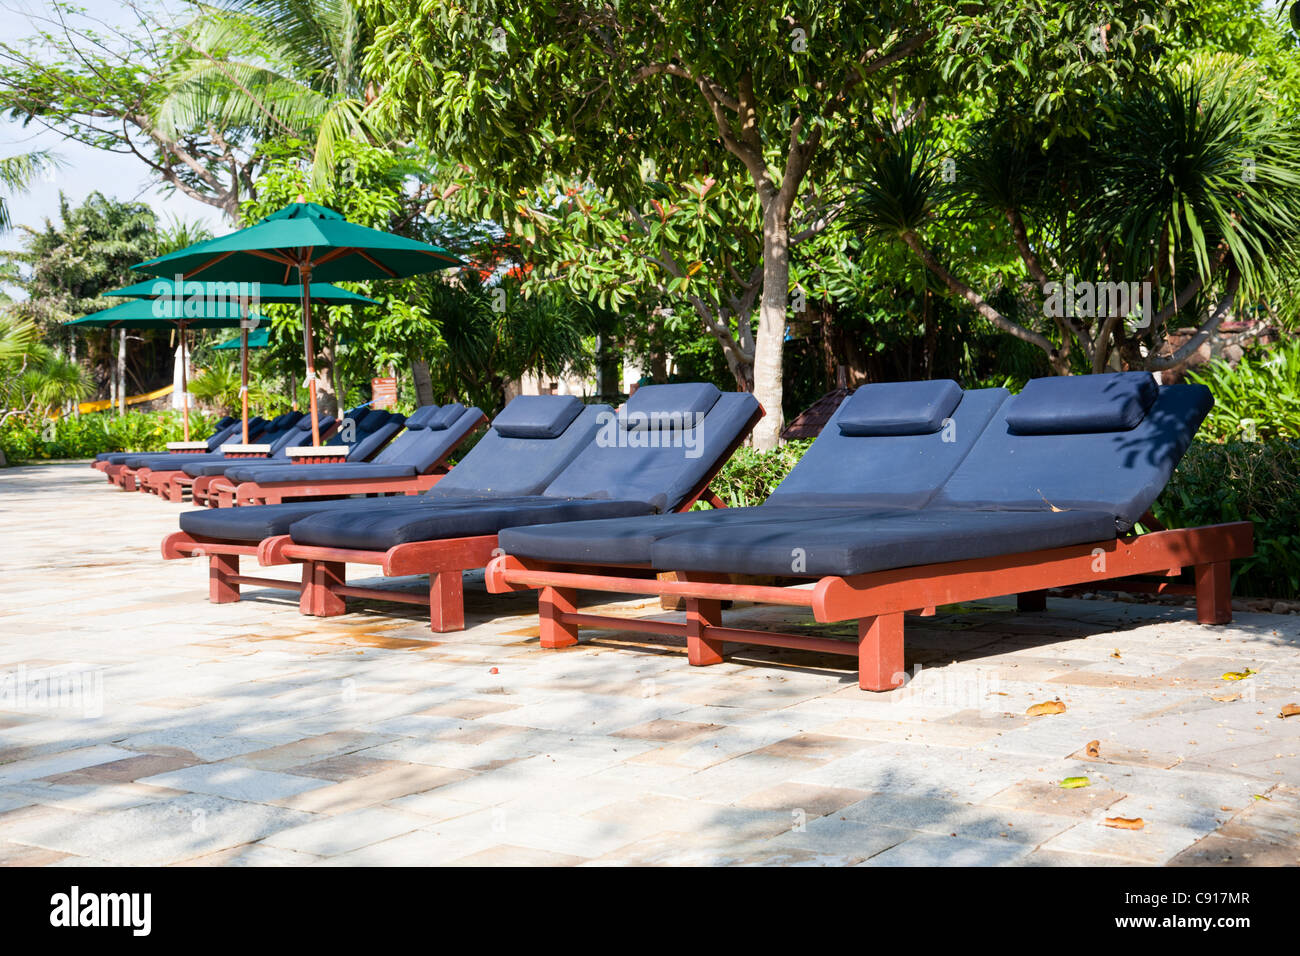 Des chaises longues et des parasols près de la piscine dans un jardin tropical Banque D'Images